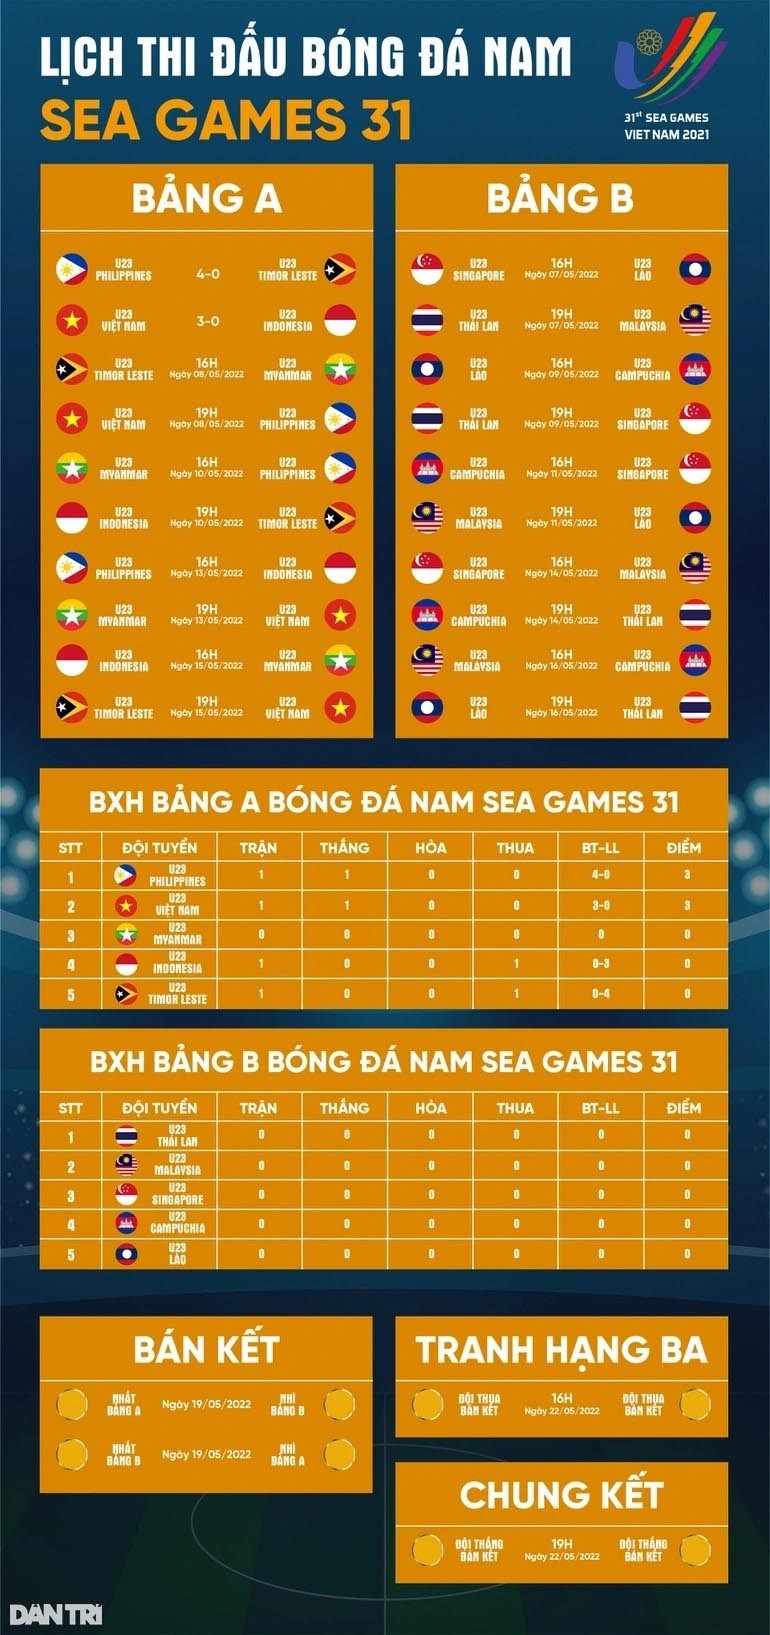  lịch thi đấu bóng đá nam sea games 31. (Nguồn: Dân trí)